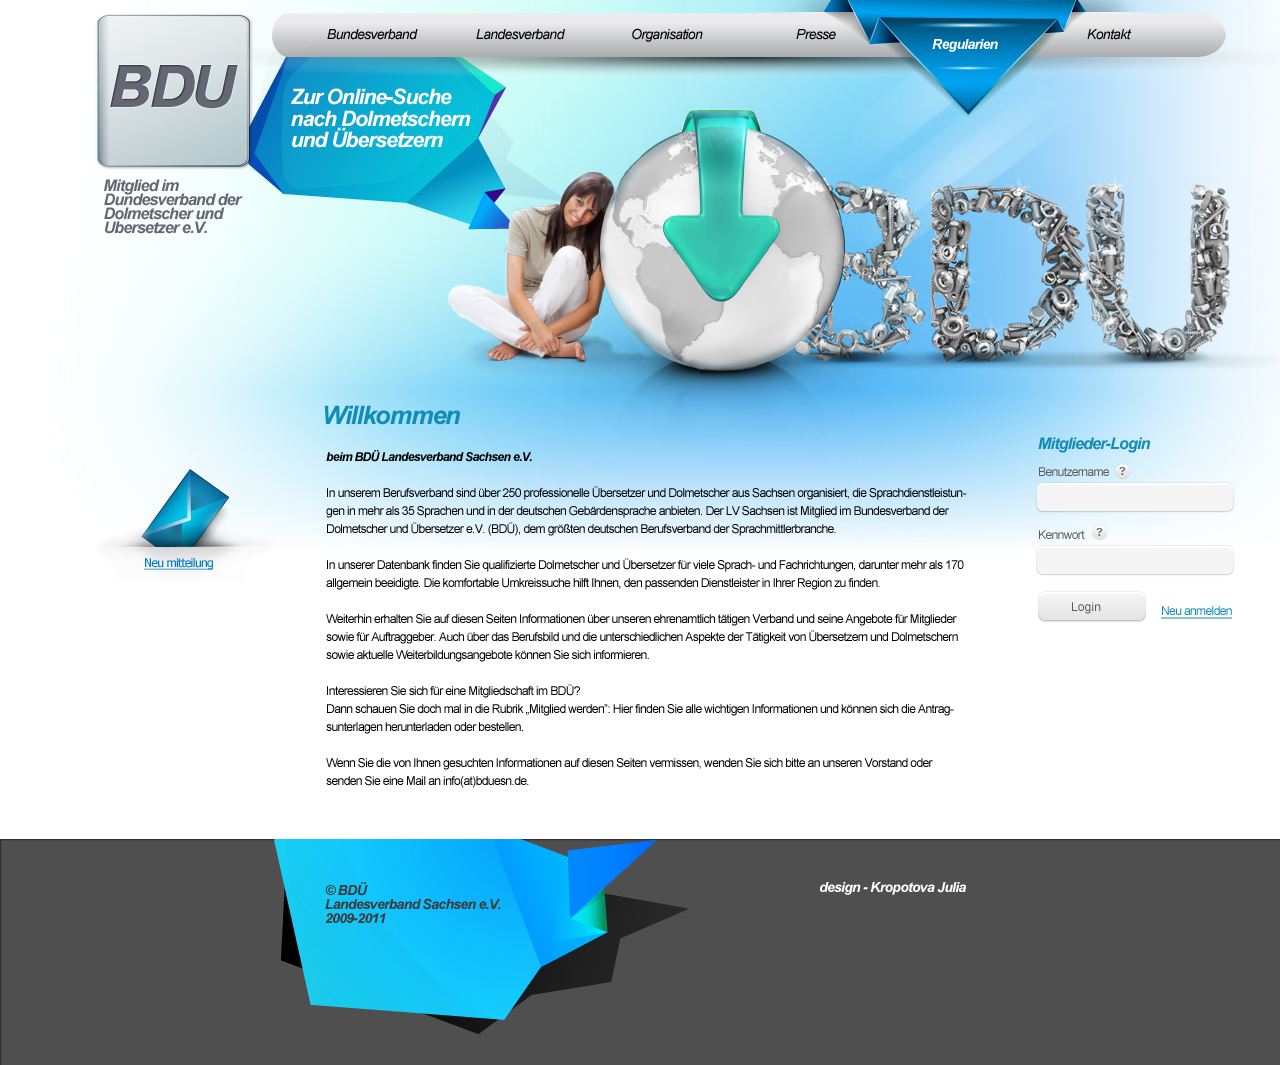 Дизайн сайта для бюро переводов (Германия)